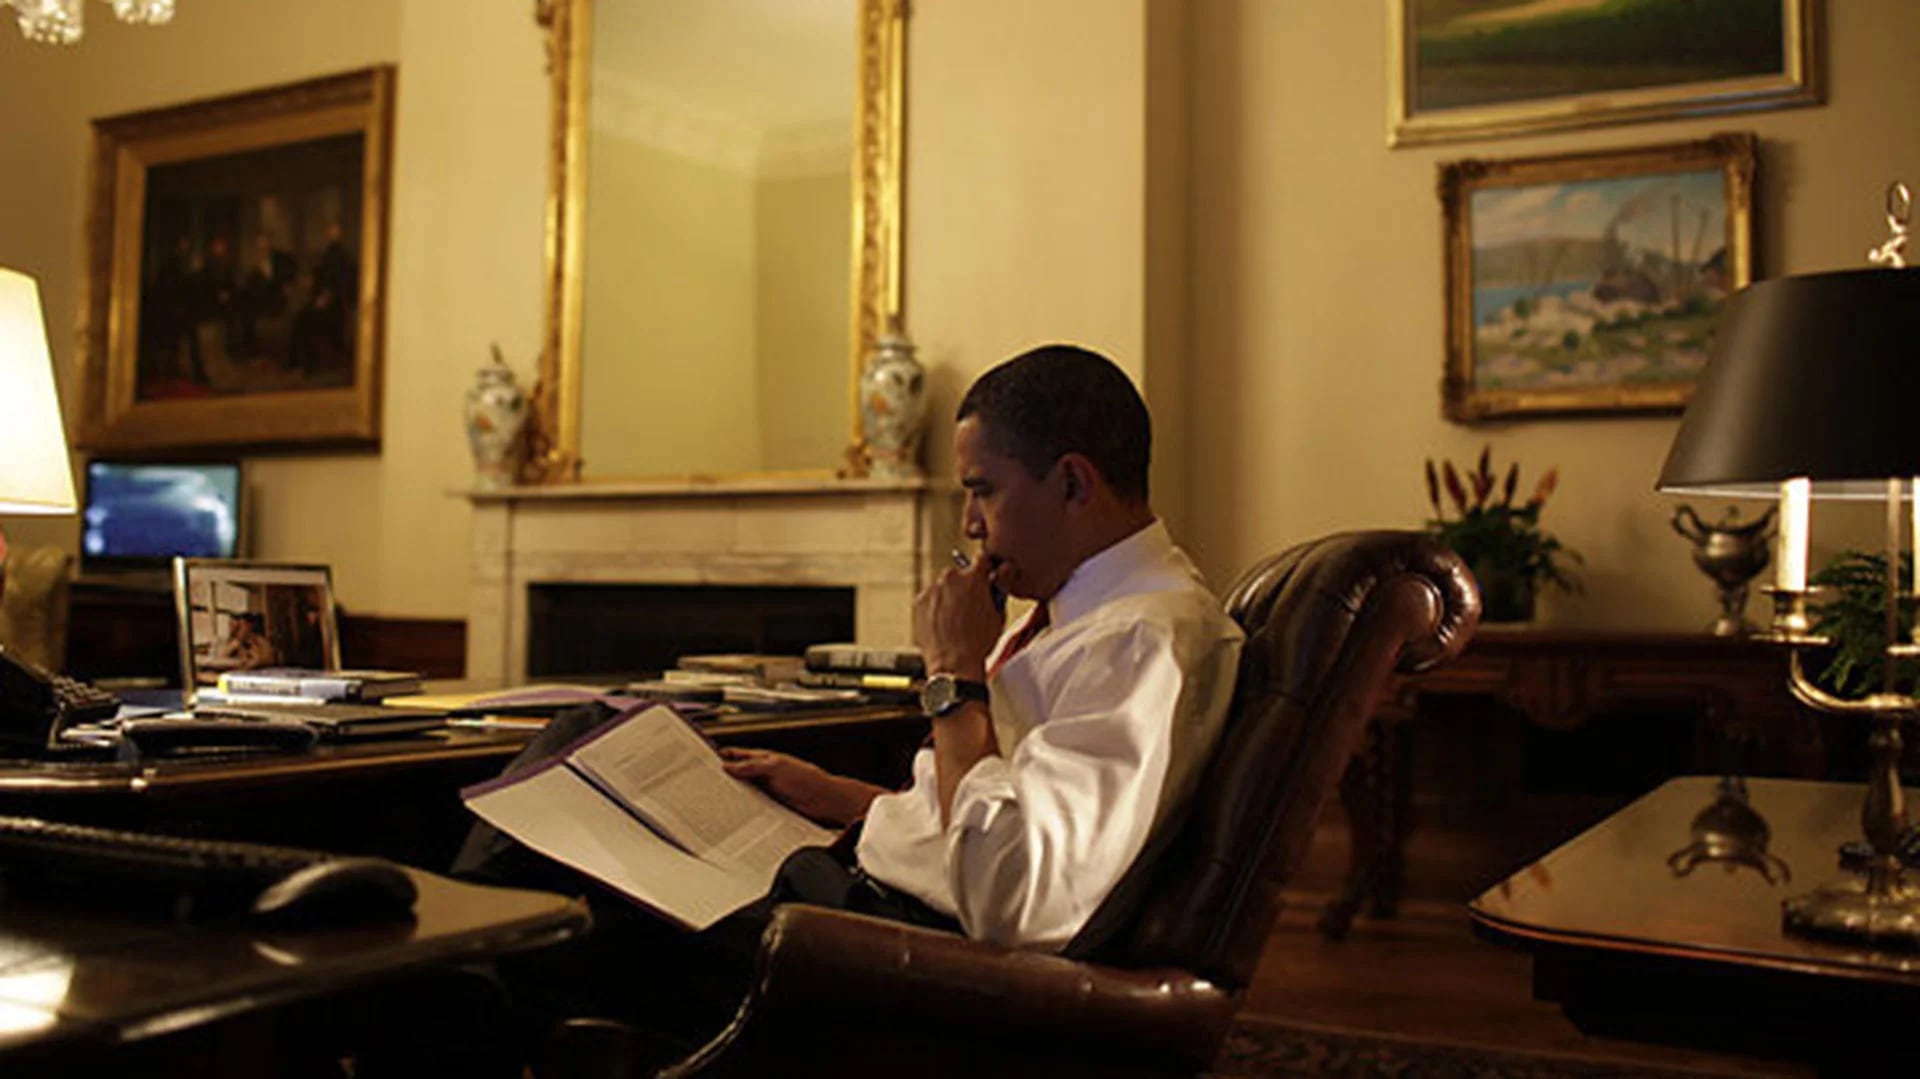 El sillón giratorio del Treaty Room es el favorito del Presidente para revisar documentos en soledad (AP)